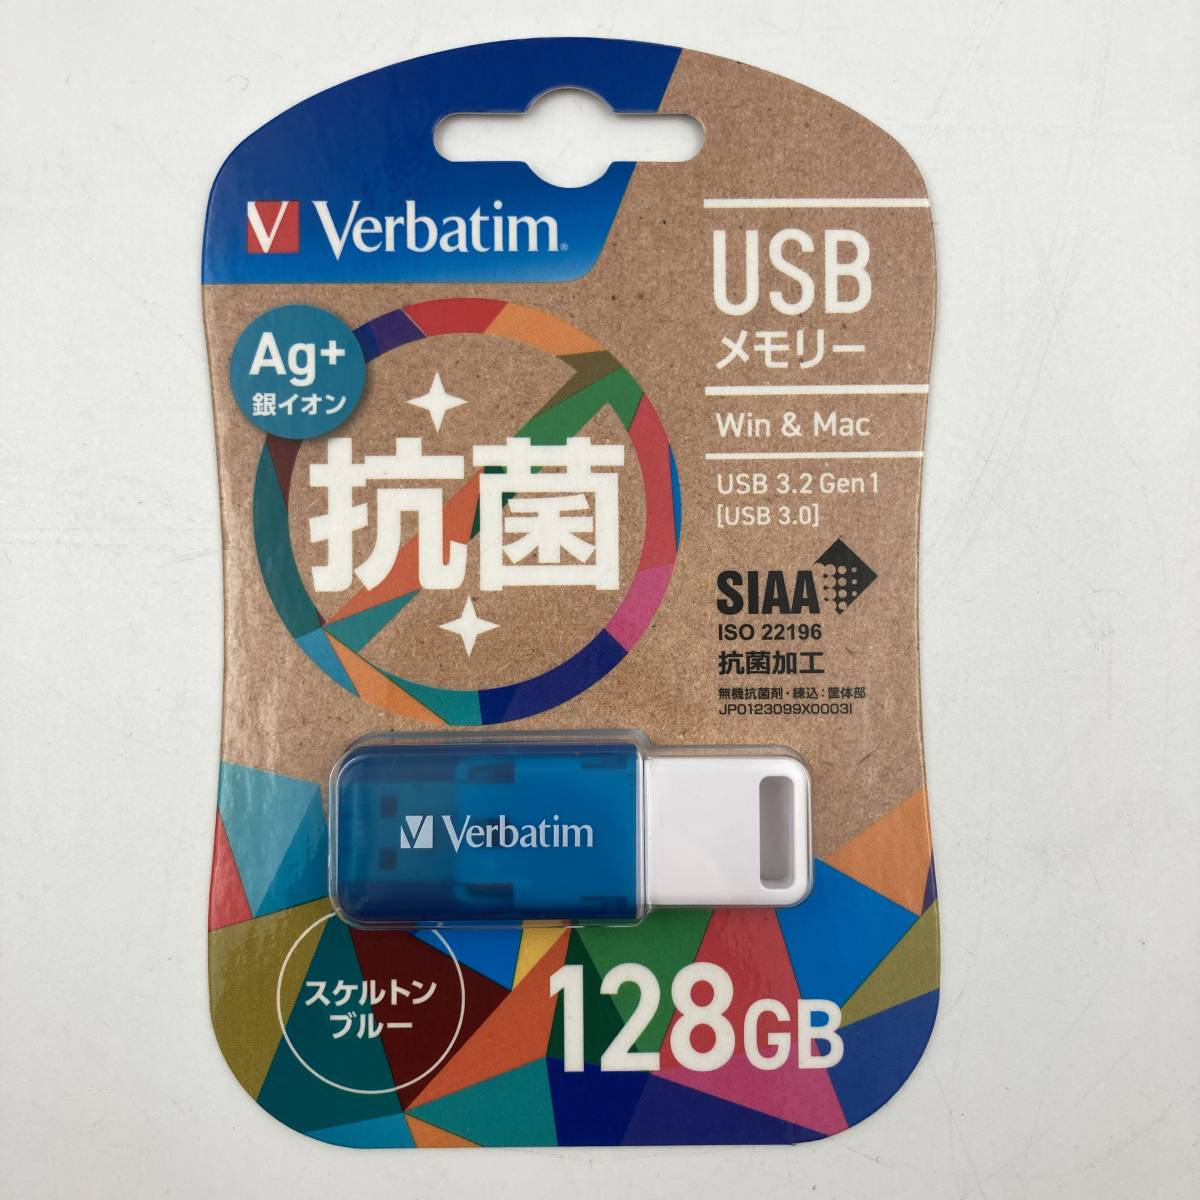 【新品】 Verbatim USB 3.2 Gen1(USB 3.0) USBメモリー 128GB スケルトンブルー Ag+(銀イオン)抗菌 ①_画像1